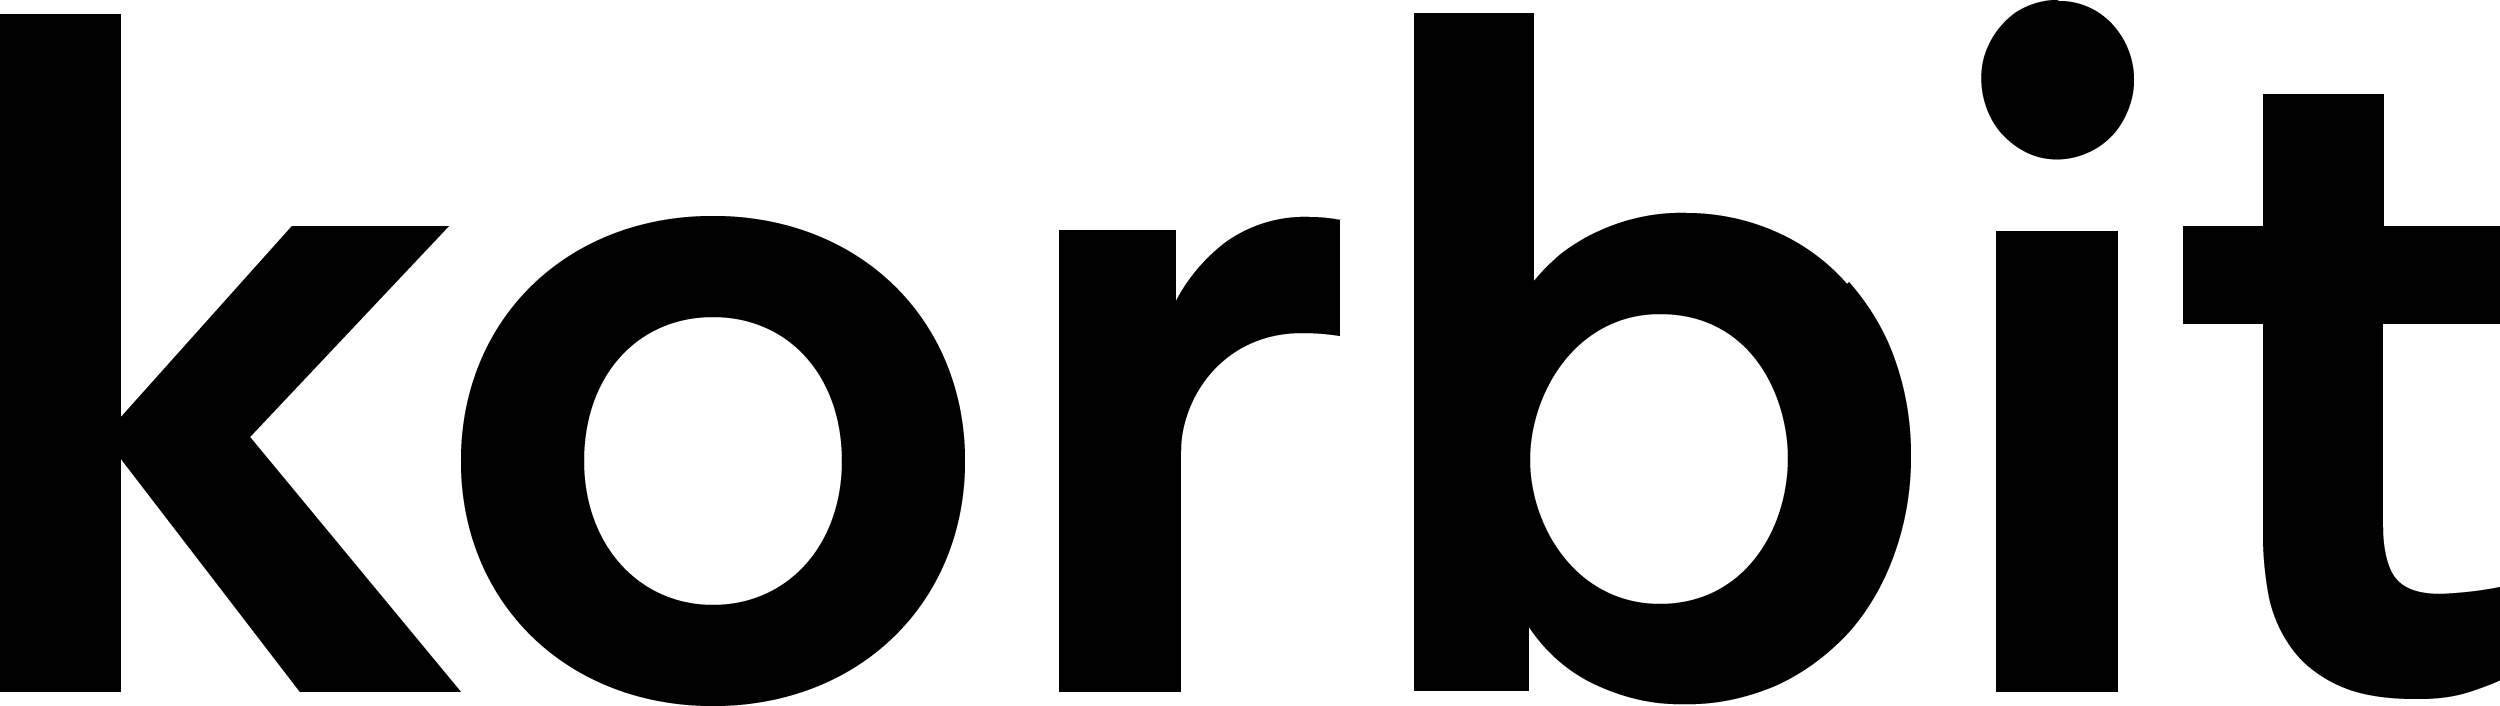 korbit-logo.png